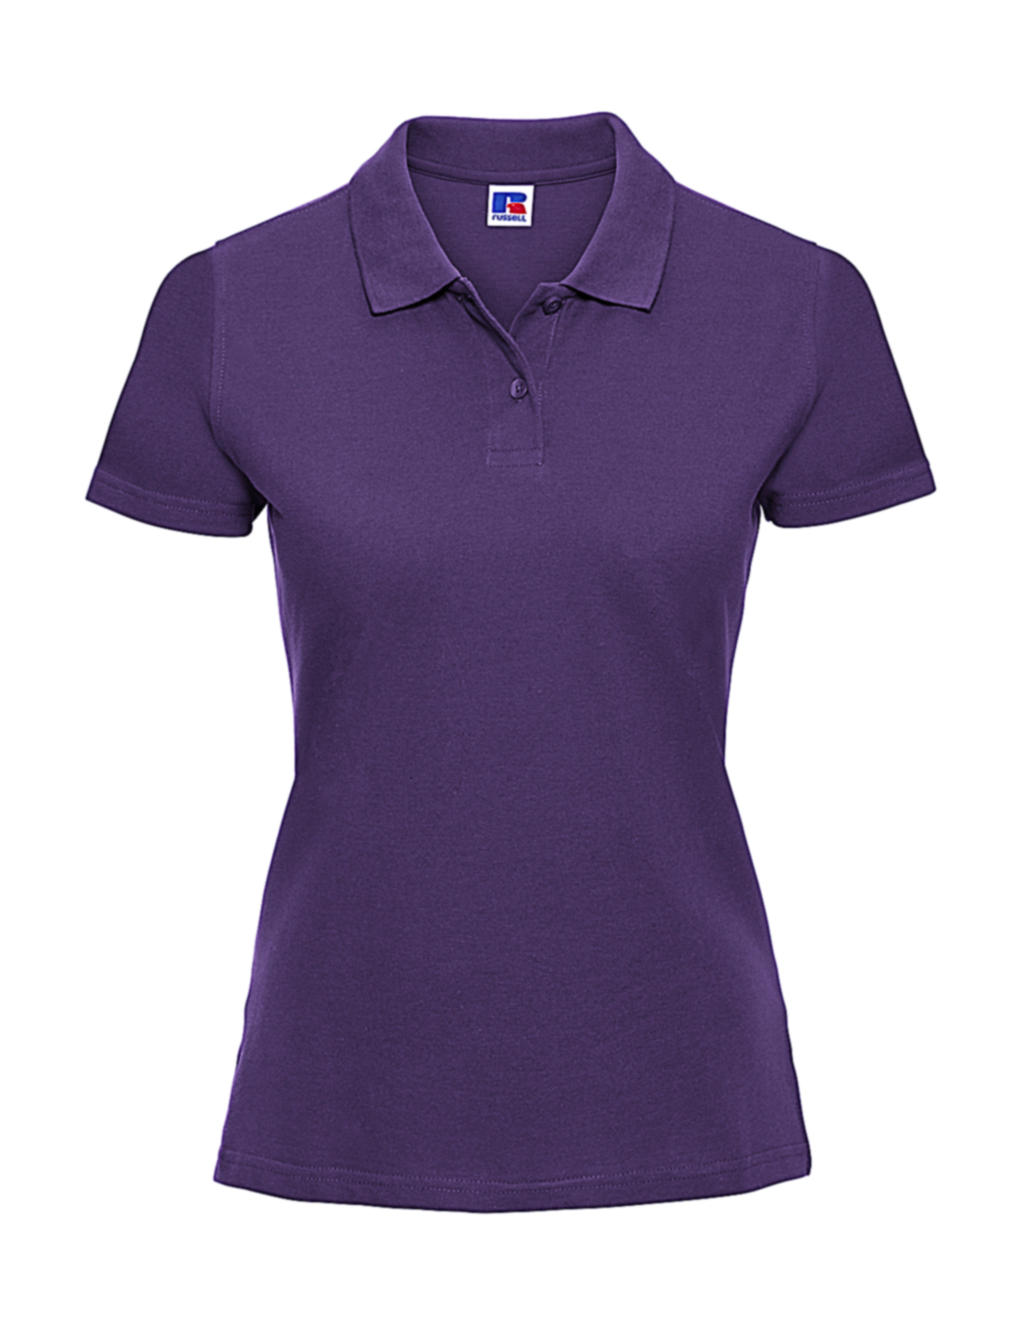  Ladies Classic Cotton Polo in Farbe Purple